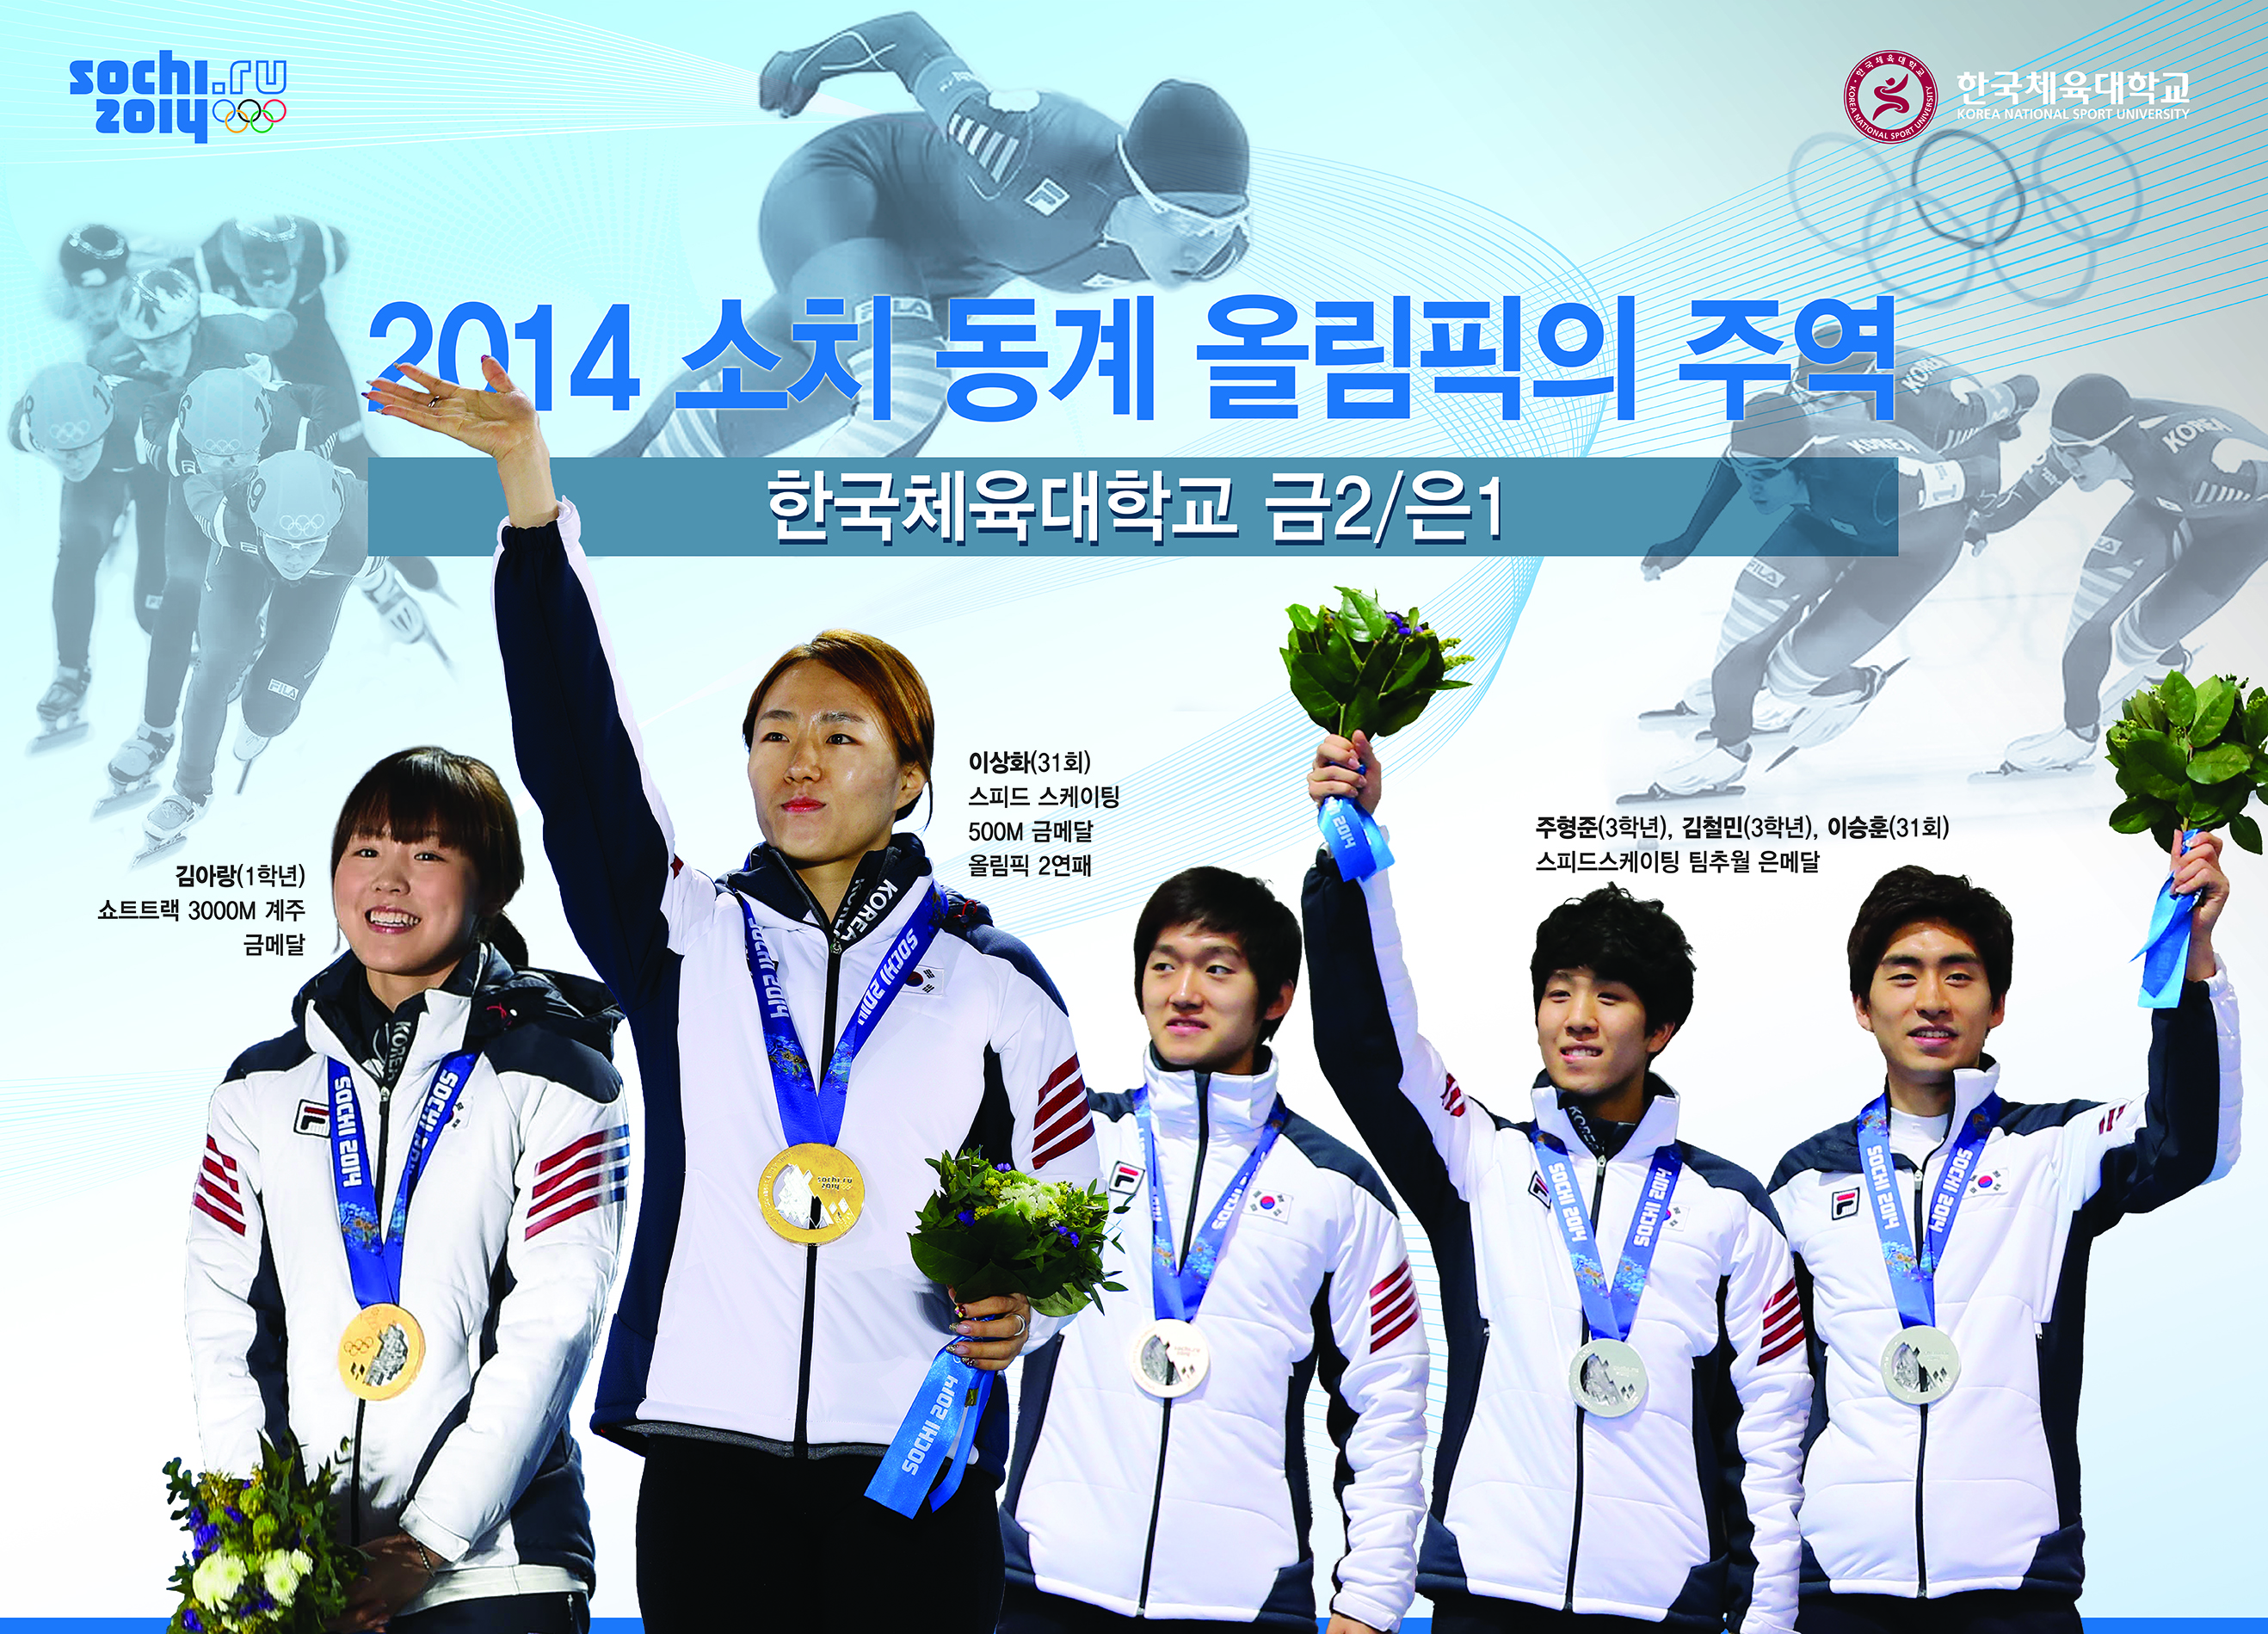 2014 소치올림픽_포스터최종.jpg